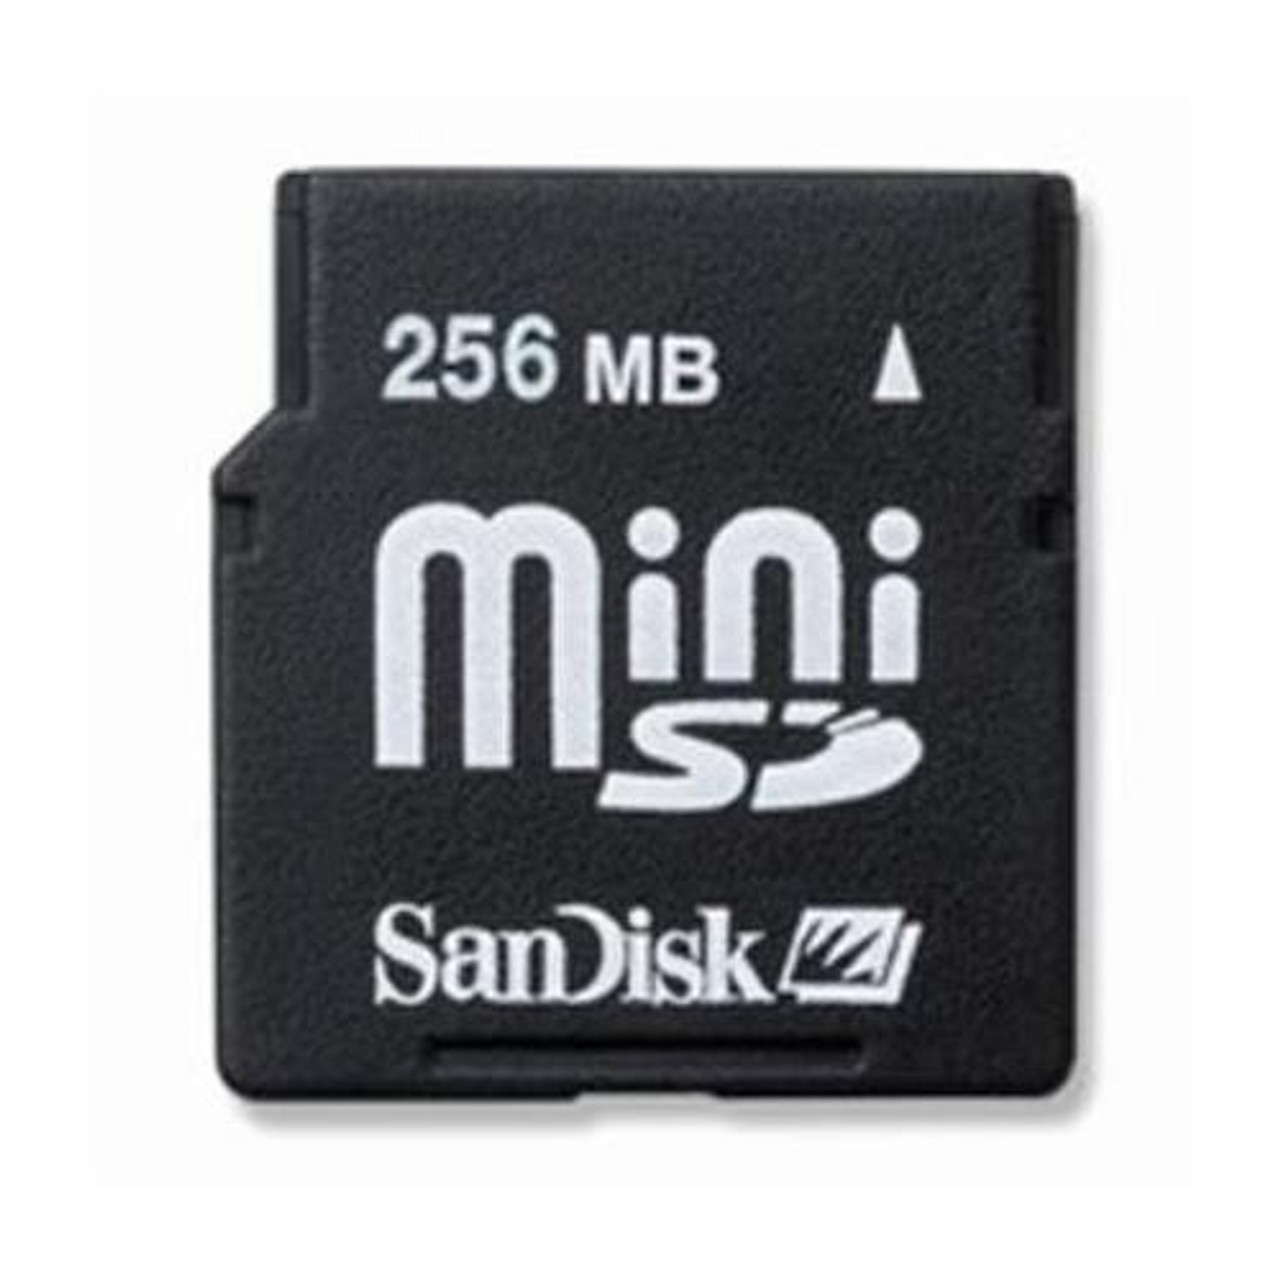 Не видит карты памяти microsd. SD MINISD MICROSD. Карта памяти MINISD 1gb Apacer. Карта памяти LG Mini SD Card 128mb. Карта памяти LG Mini SD Card 256mb.